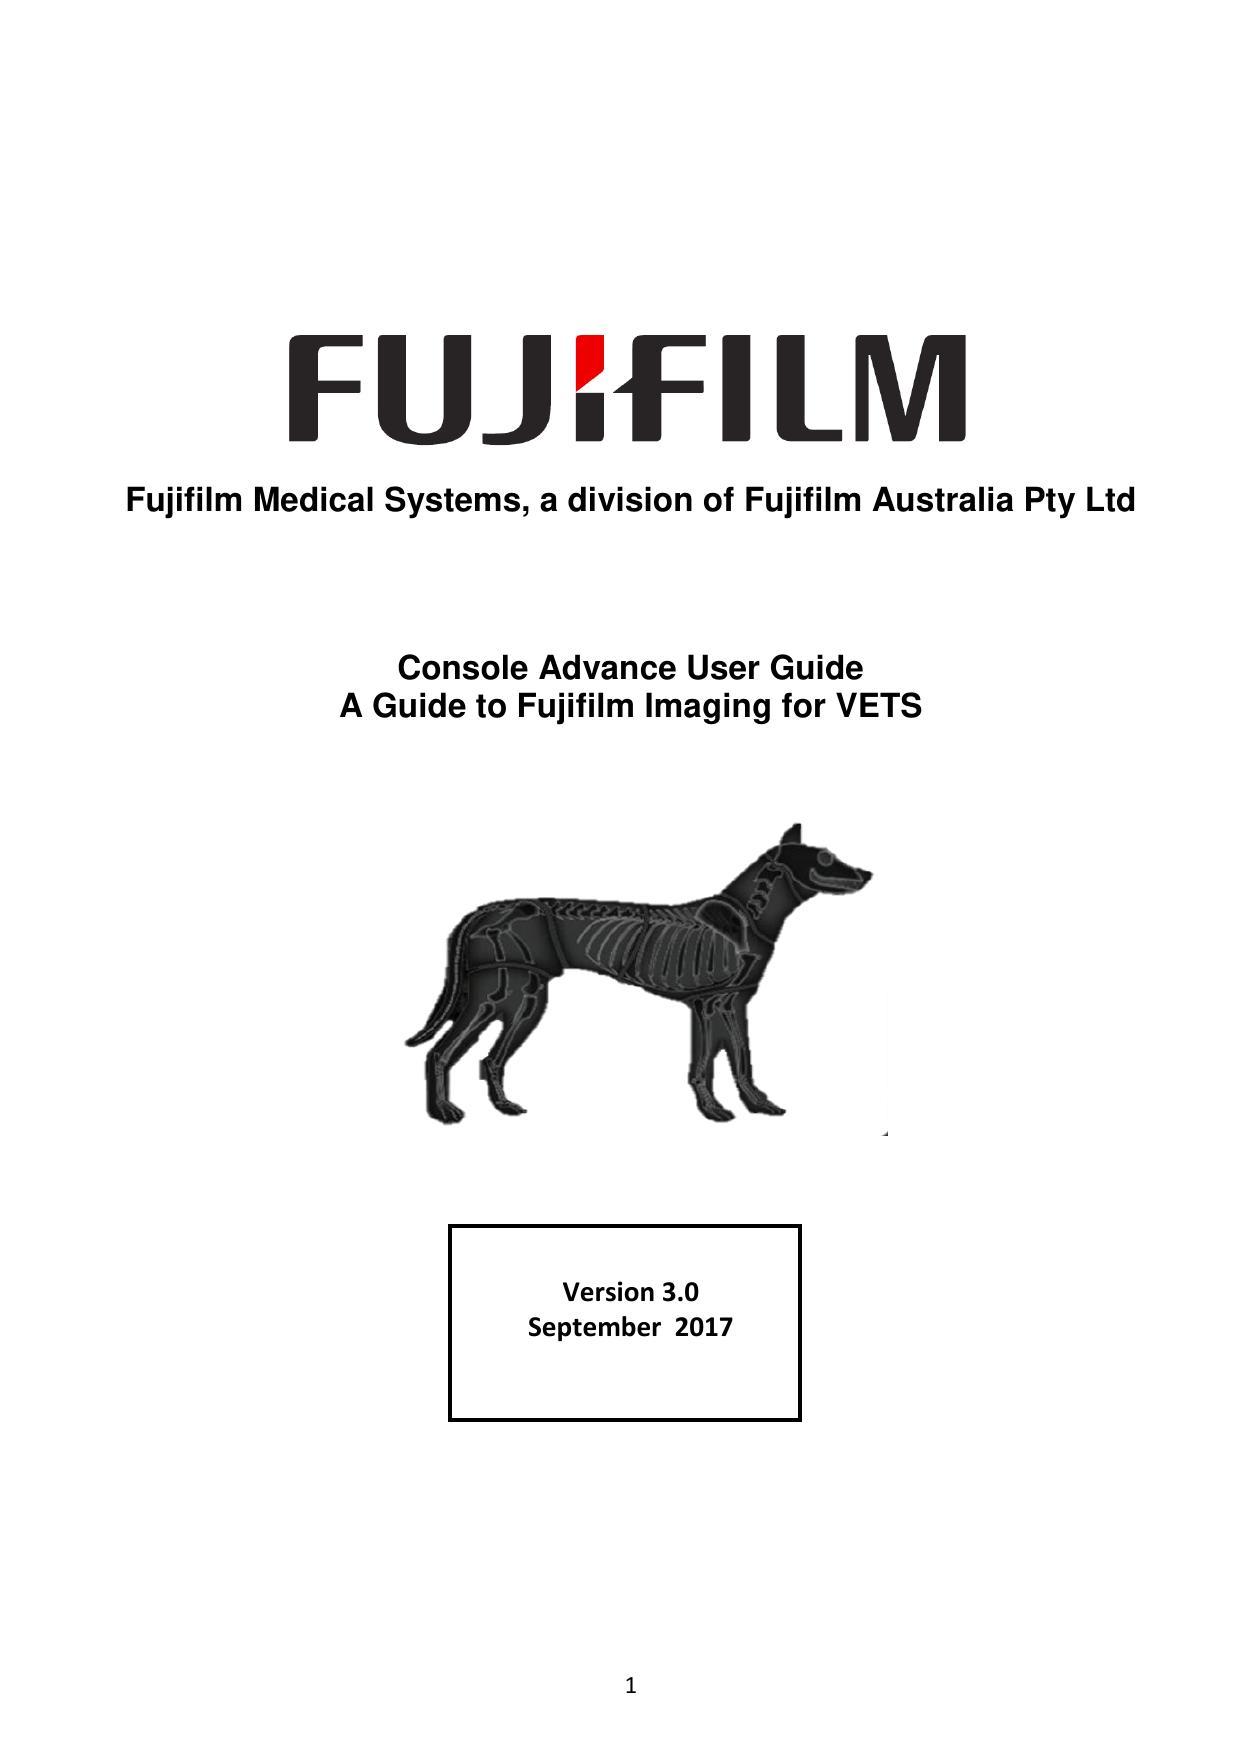 fujifilm-console-advance-user-guide-a-guide-to-fujifilm-imaging-for-vets.pdf